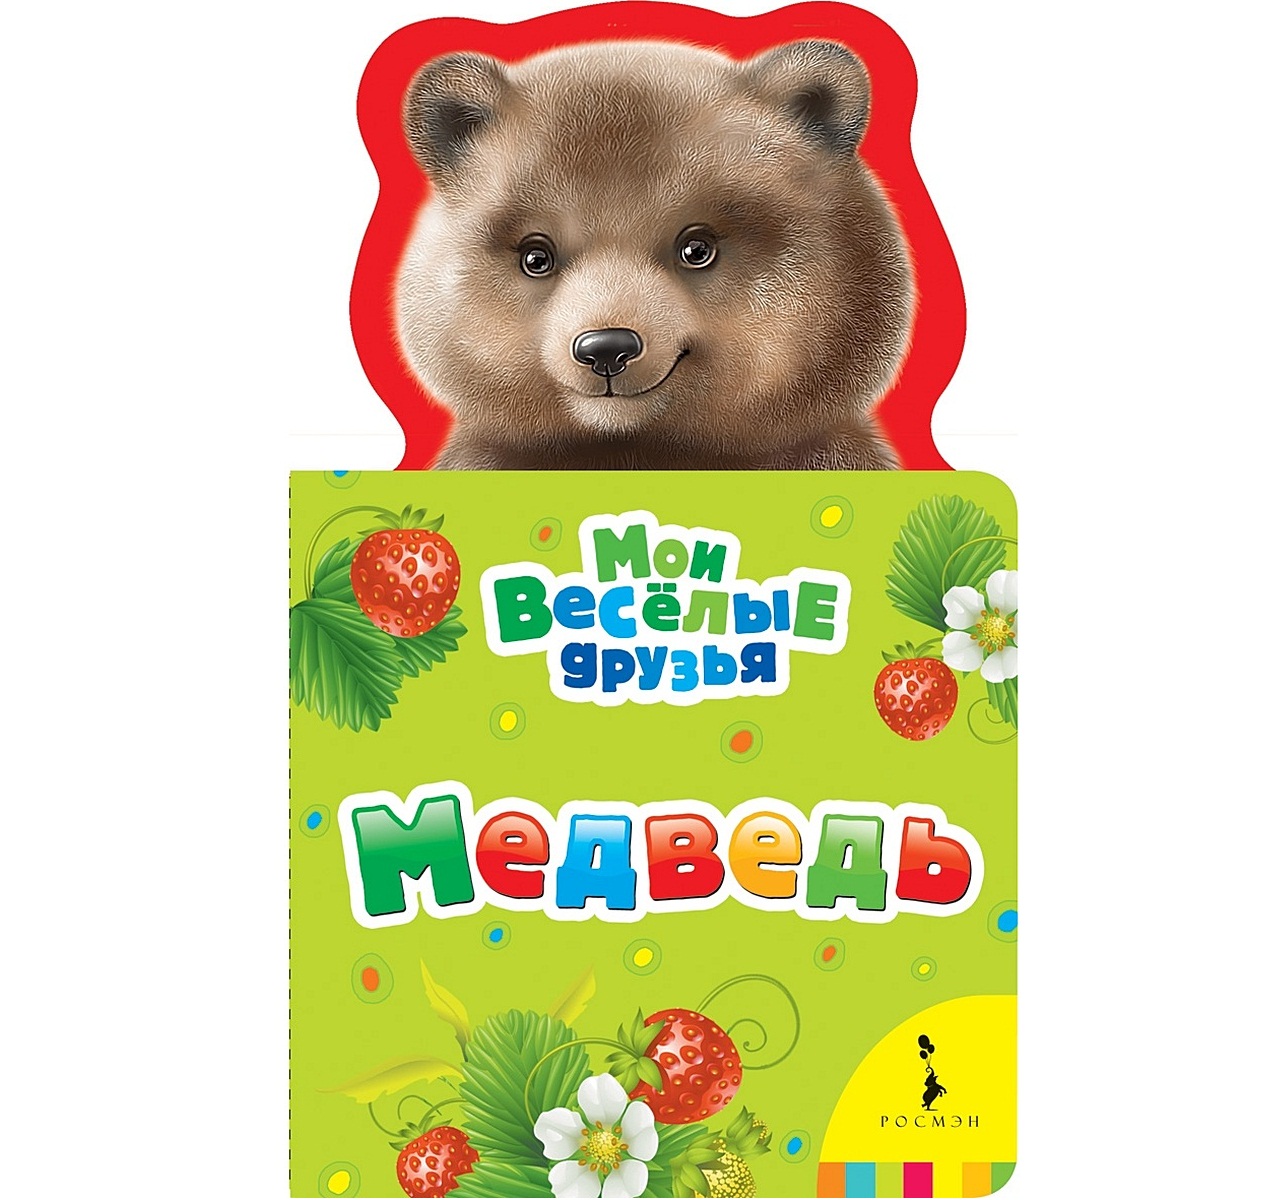 Купить книгу мишка. Мишки в книжке. Книжки для мишки Росмэн. Книжки картонки для малышей медведь. Детские книжки про медвежонка.